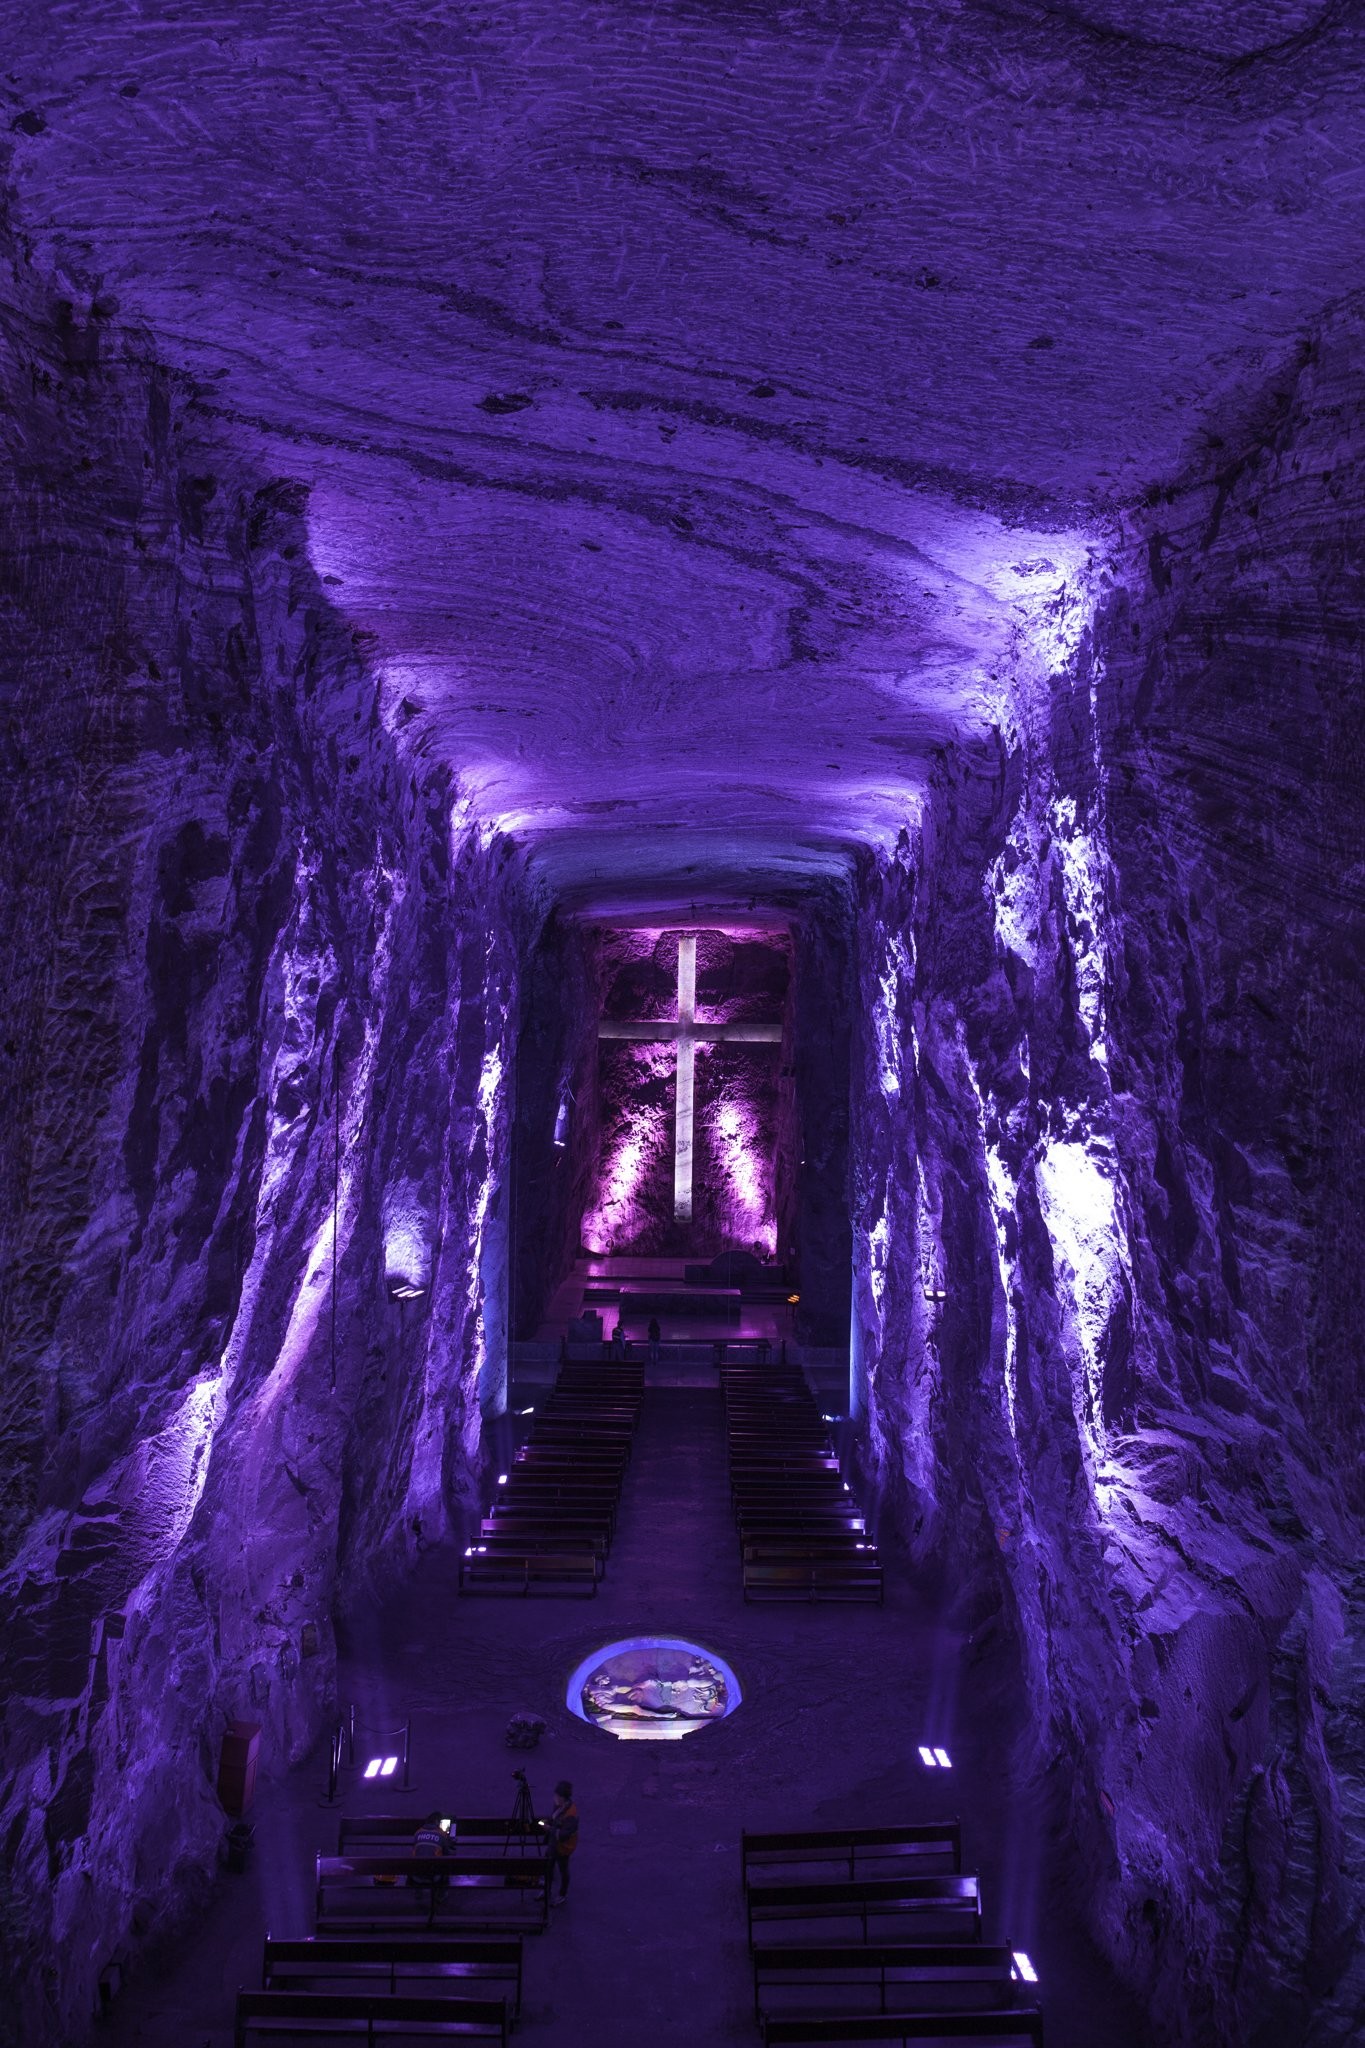 Соляной собор Сипакиры, расположенный в шахте на глубине 200 метров, Колумбия. Фотограф Джимми Байковичус